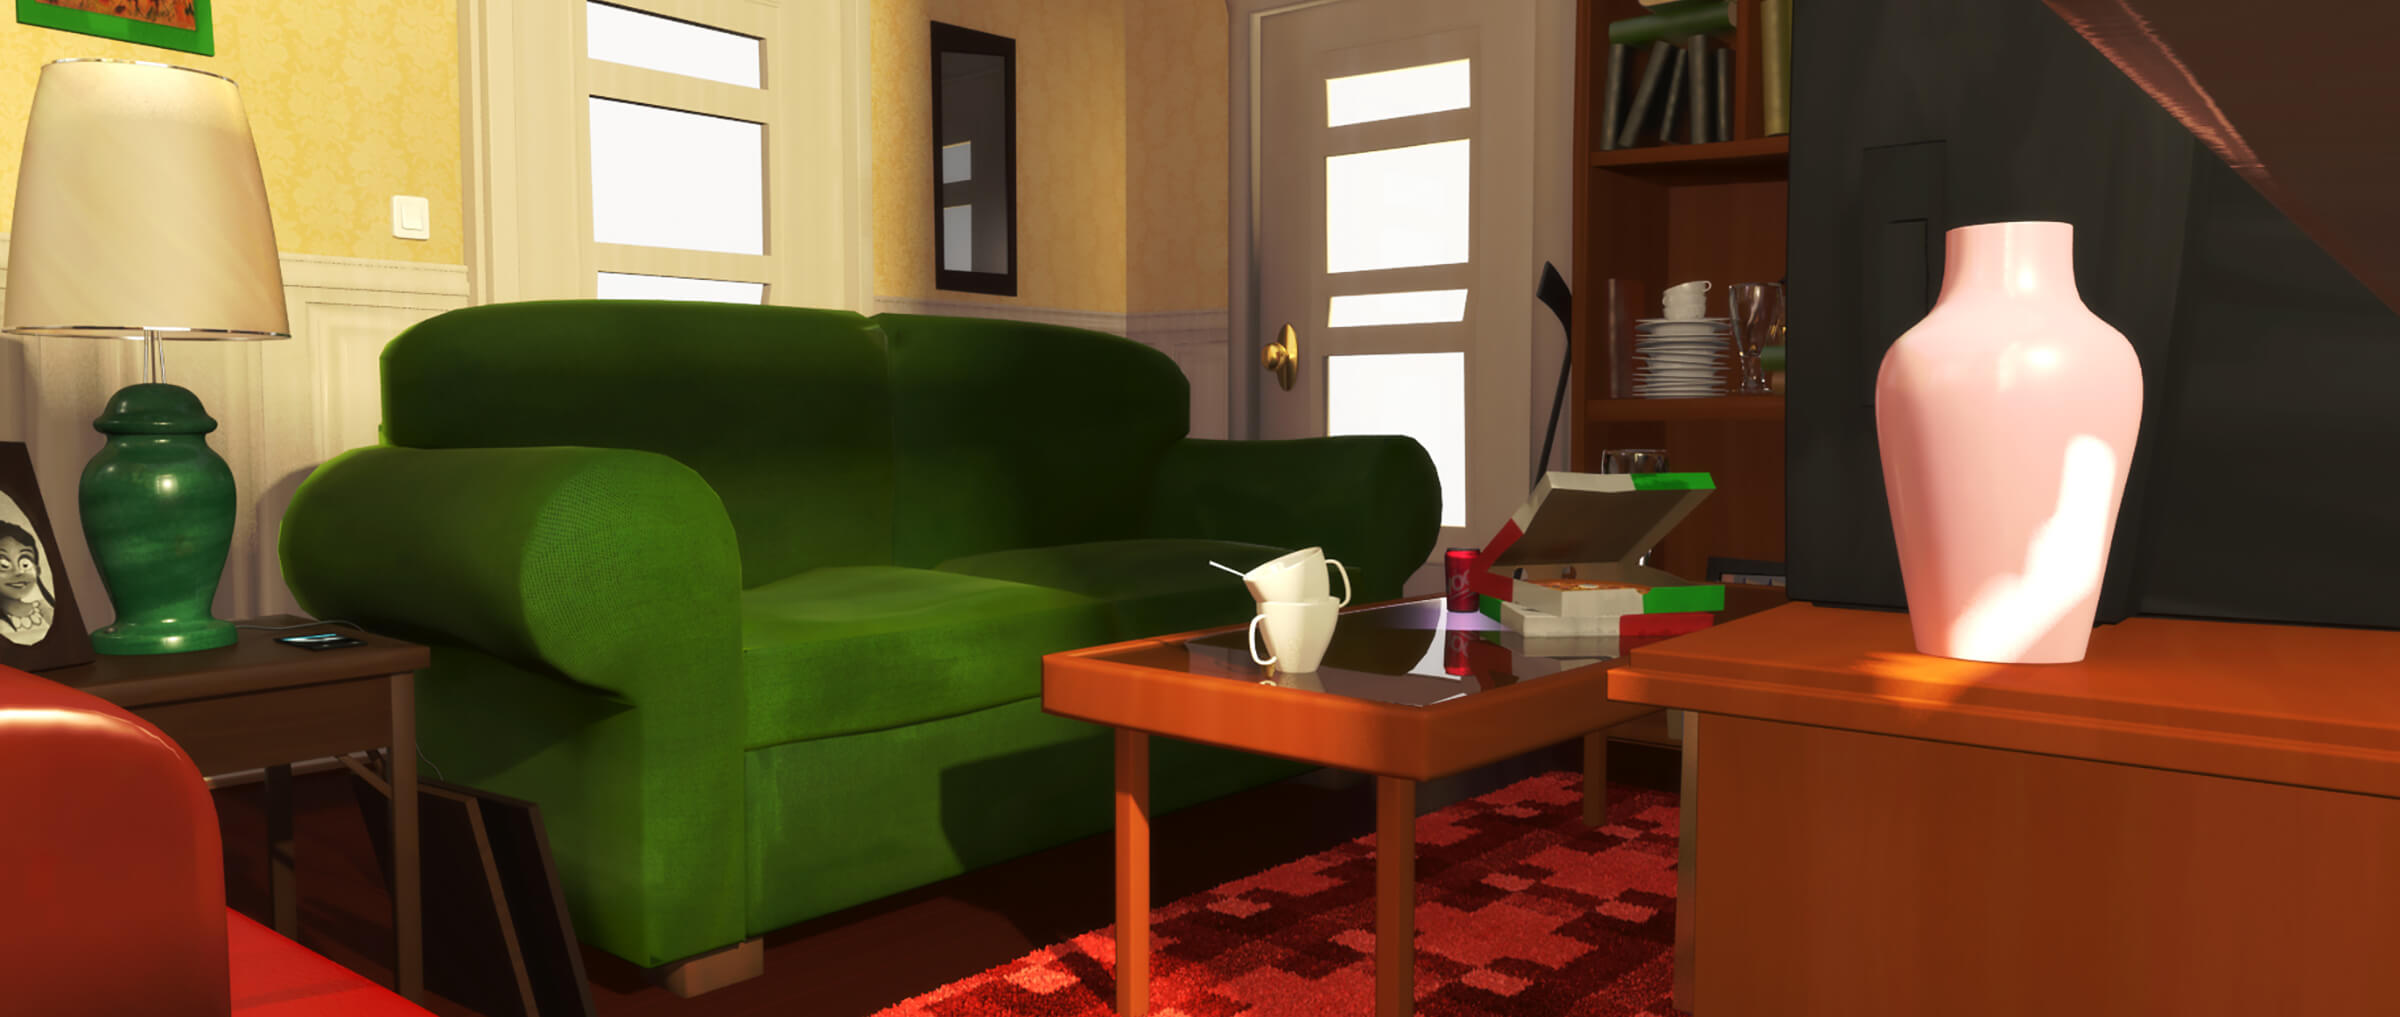 En una sala de estar iluminada por el sol, un sofá verde de dos asientos se encuentra detrás de una mesa de café de cristal con una caja de pizza abierta encima.